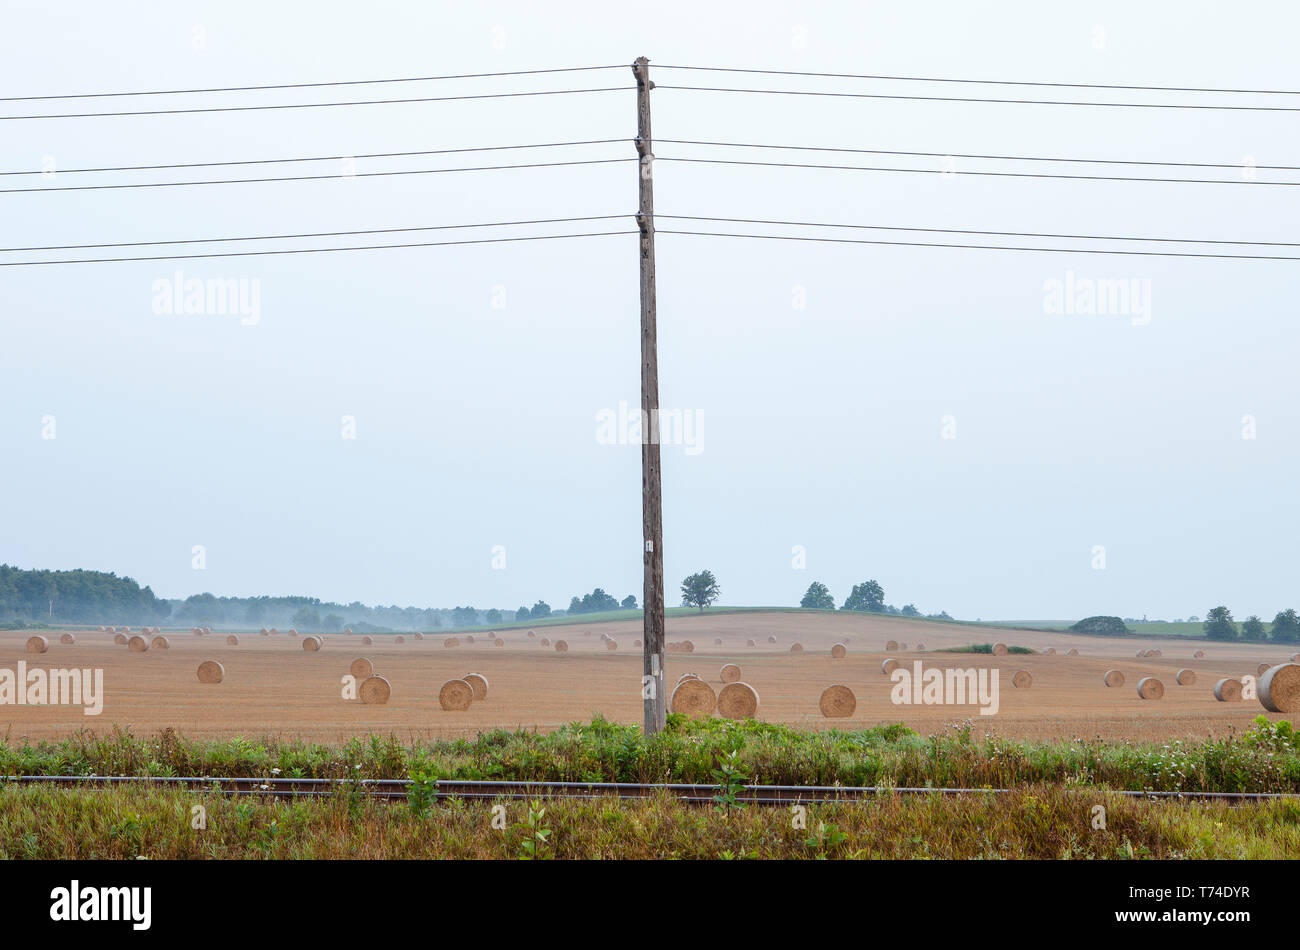 La voie de chemin de fer, lignes électriques et farm field with hay bales, Eramosa, Ontario, Canada Banque D'Images